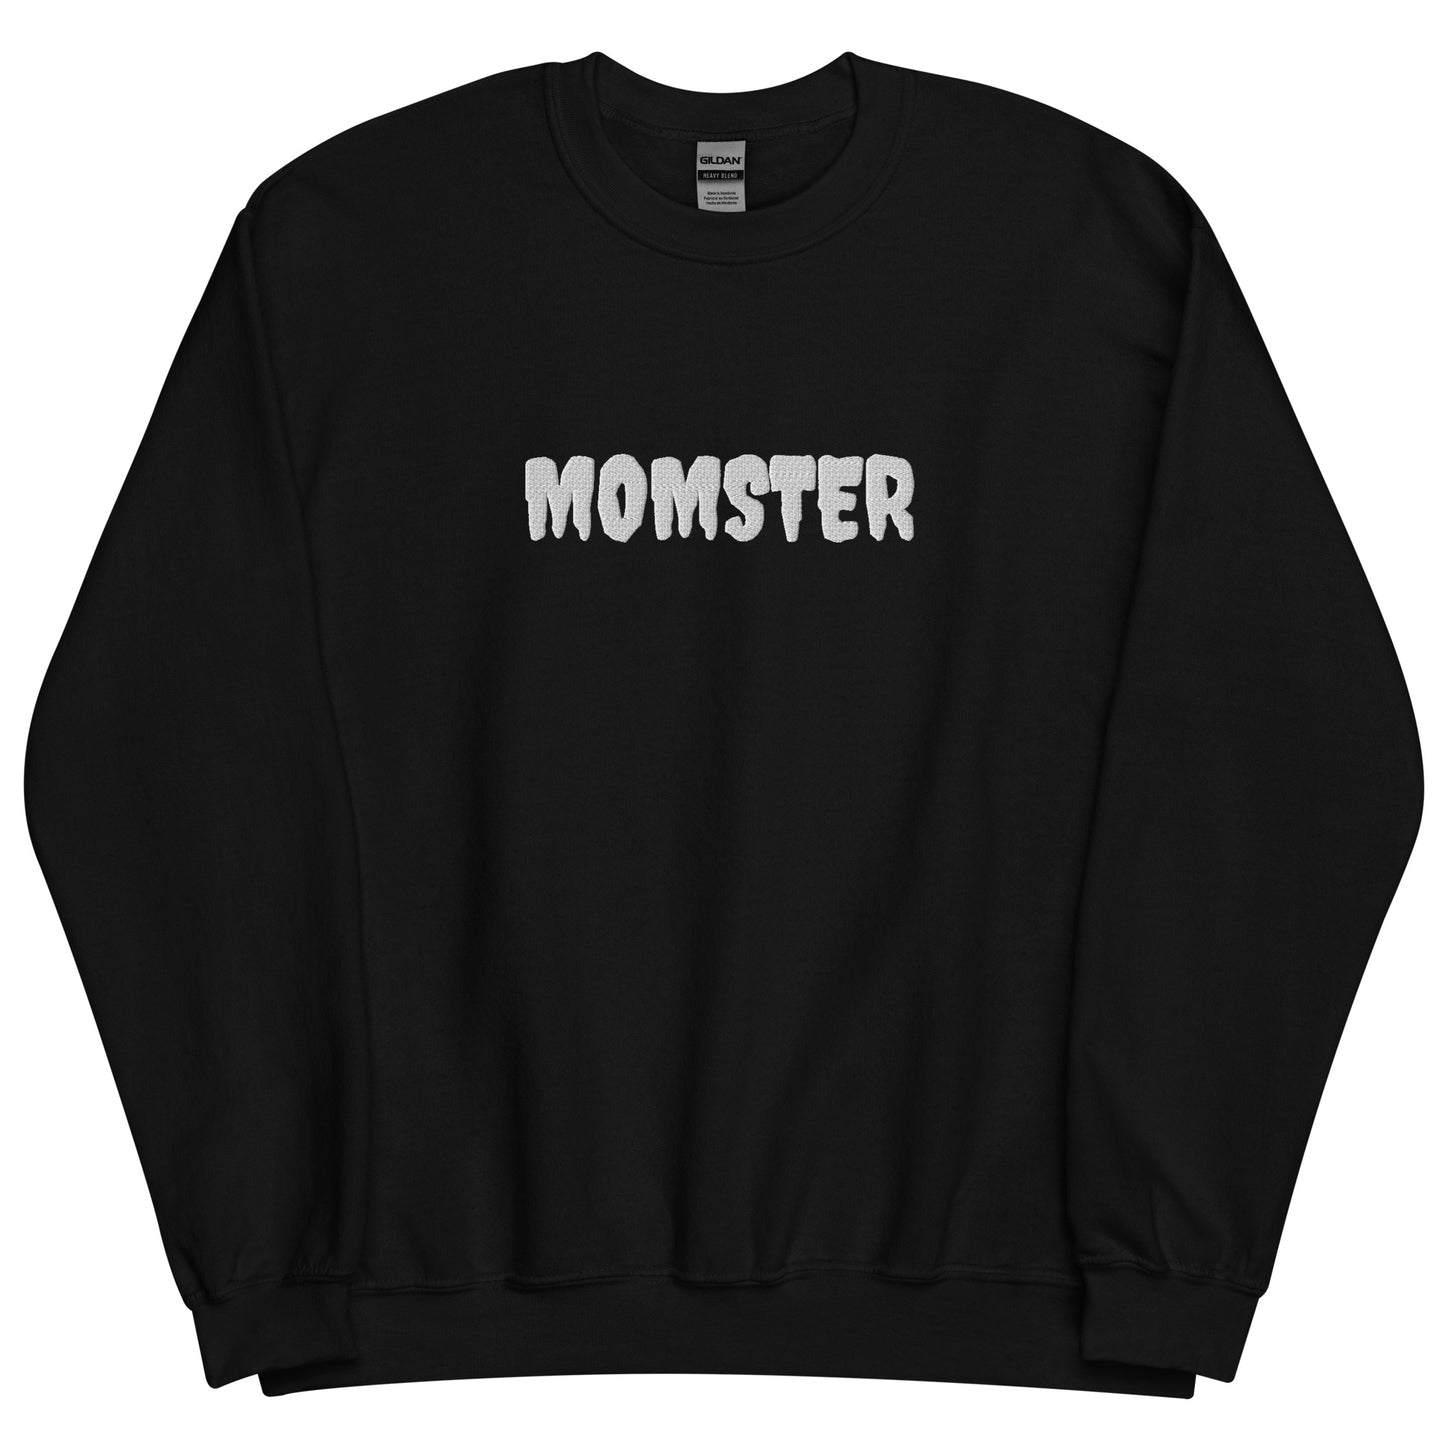 MOMSTER Sweatshirt